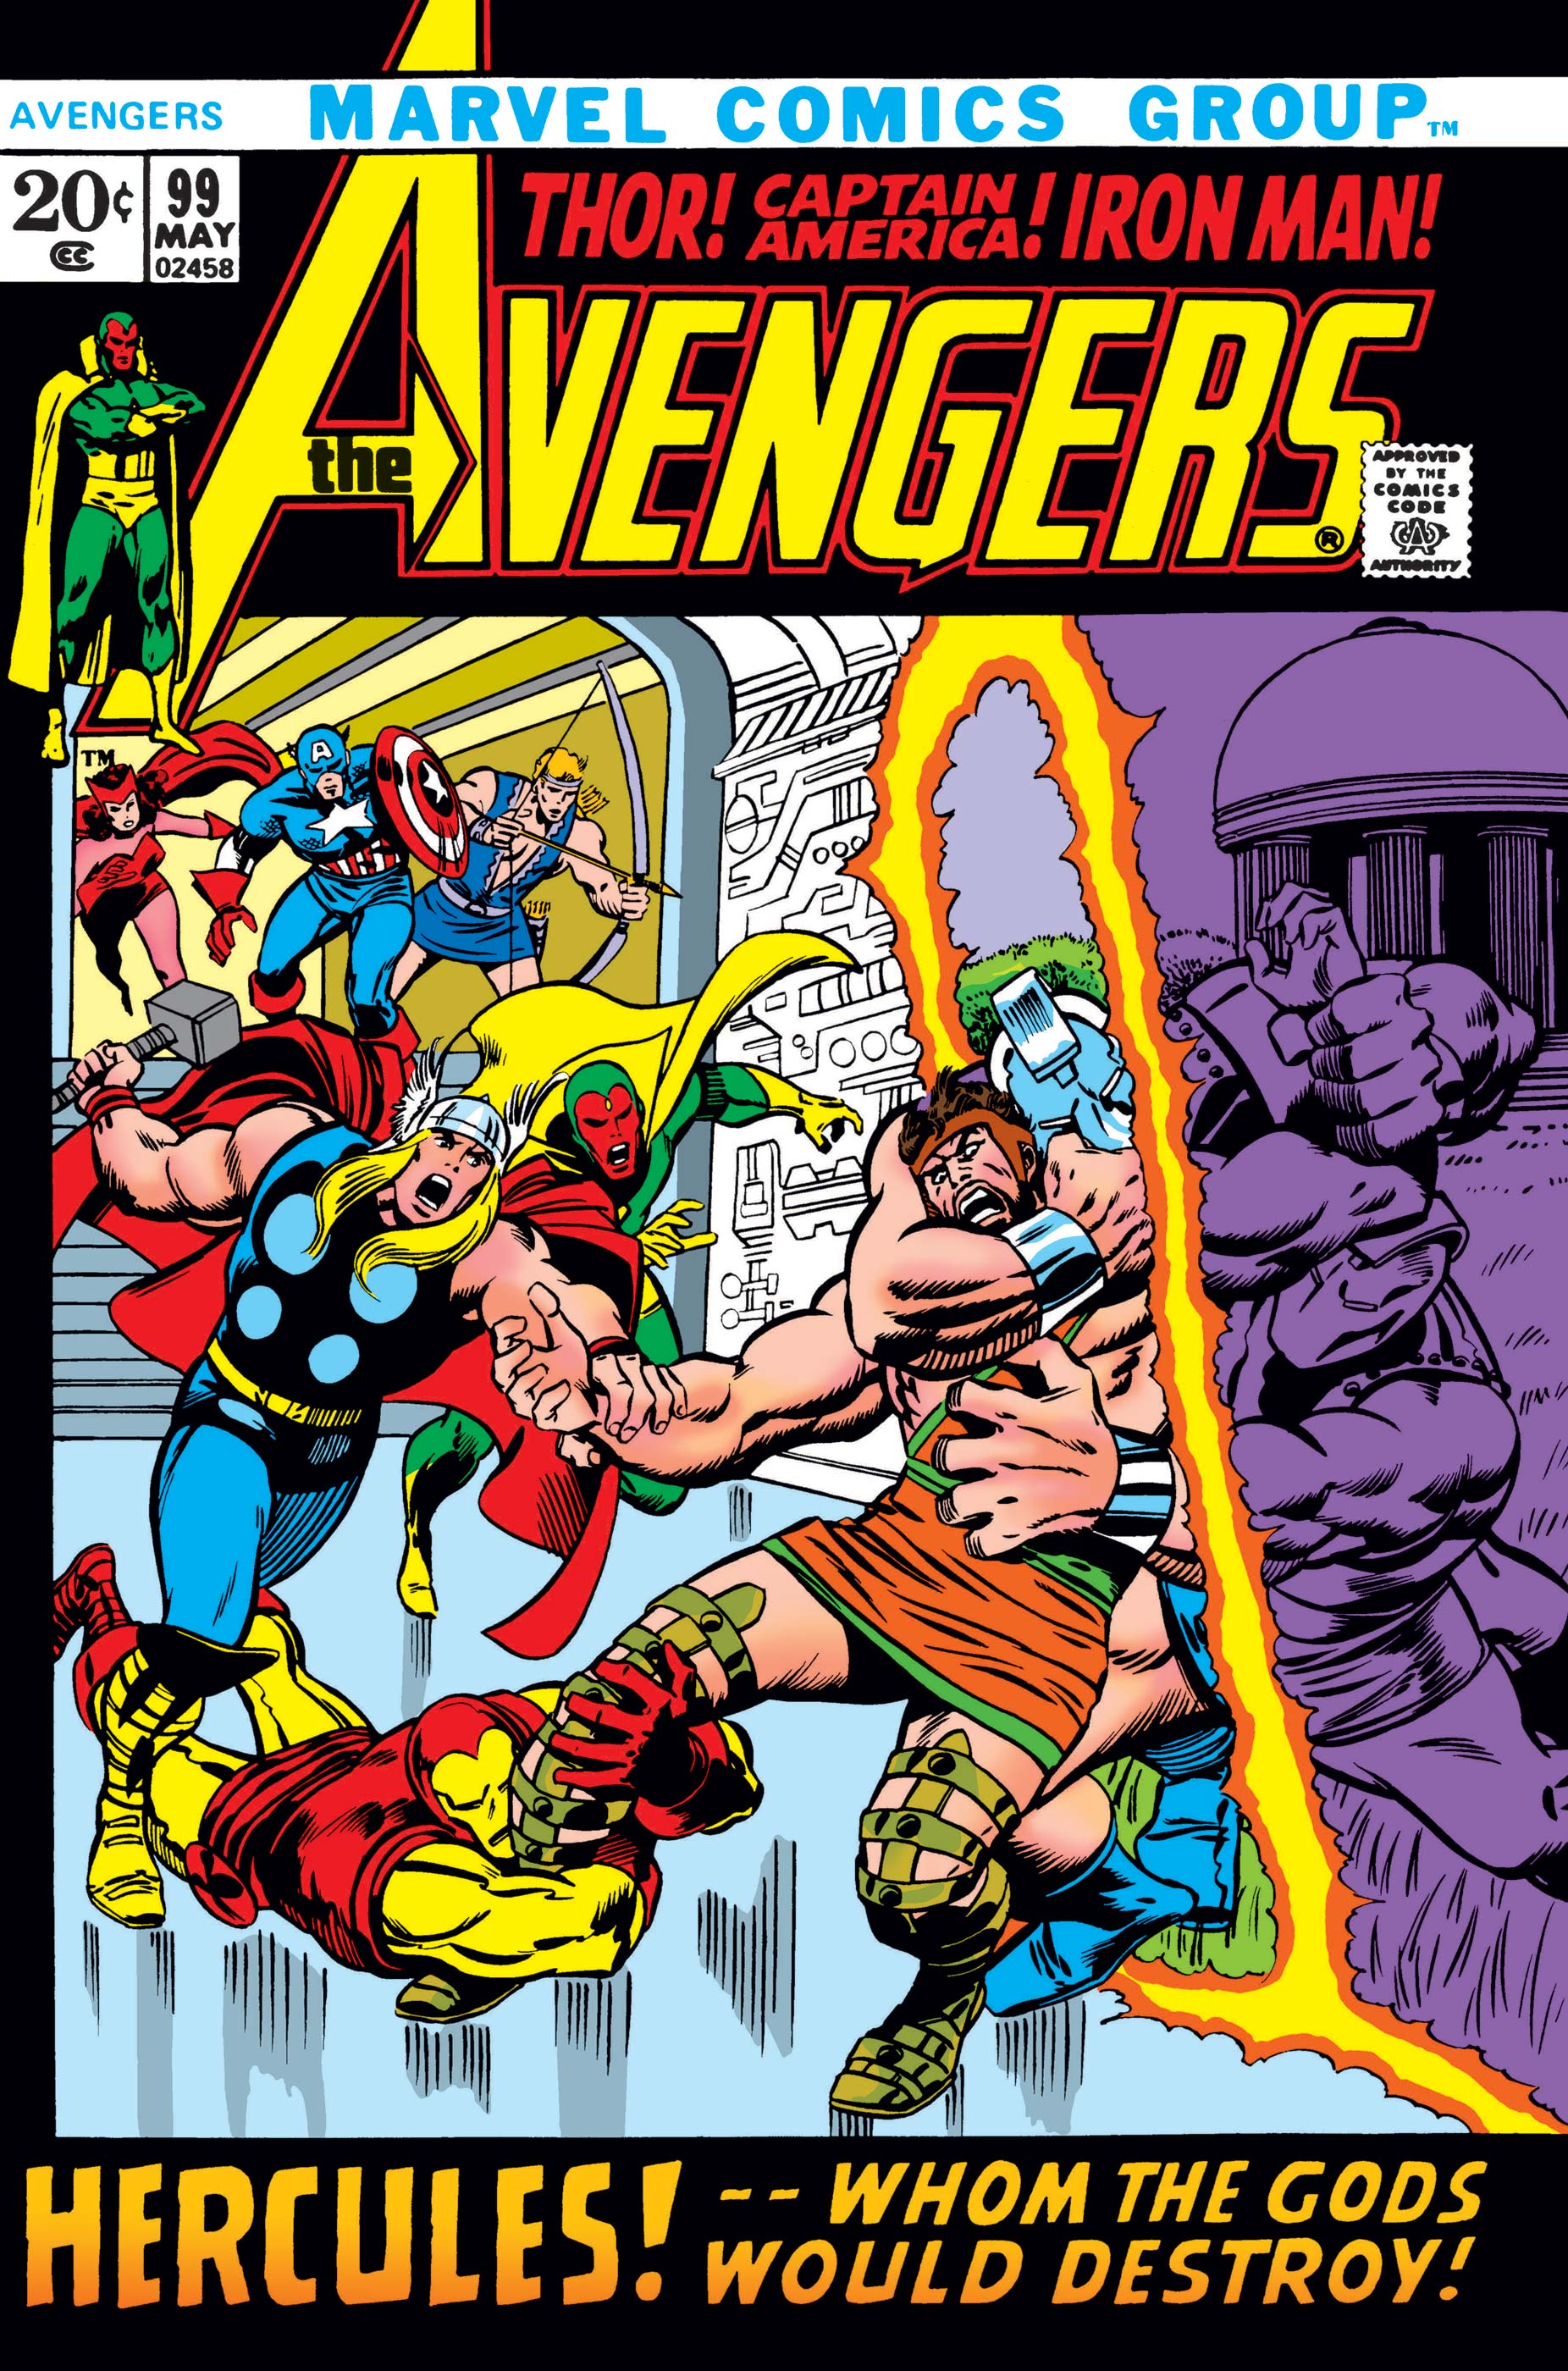 Avengers (1963) #99